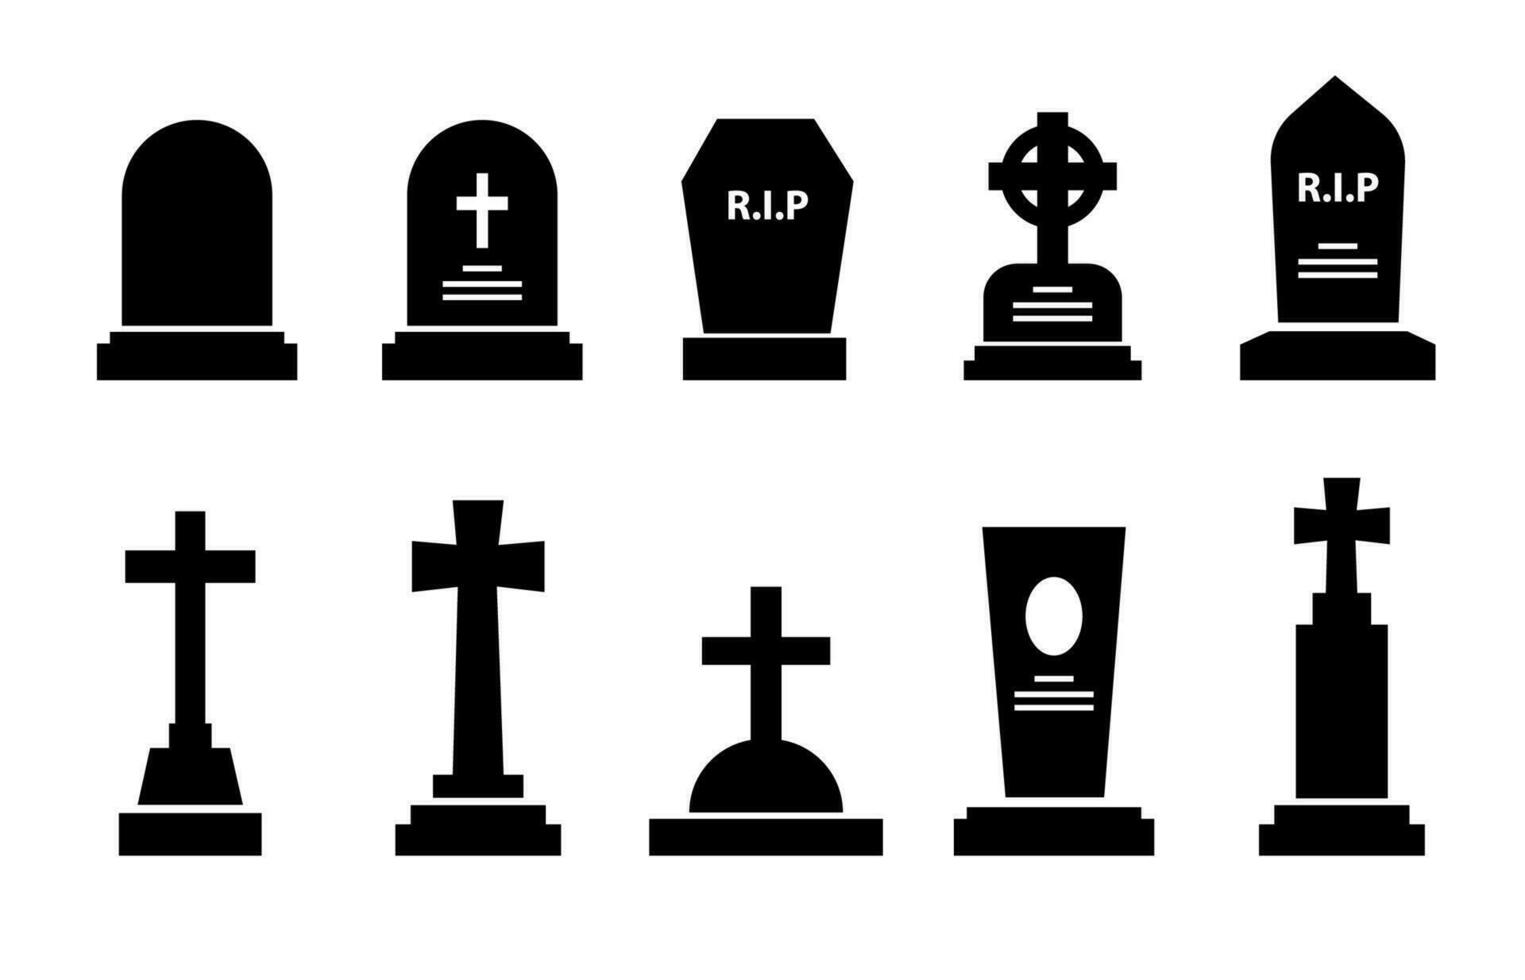 Gravestone headstone, tombstone icons, tomb stones vector